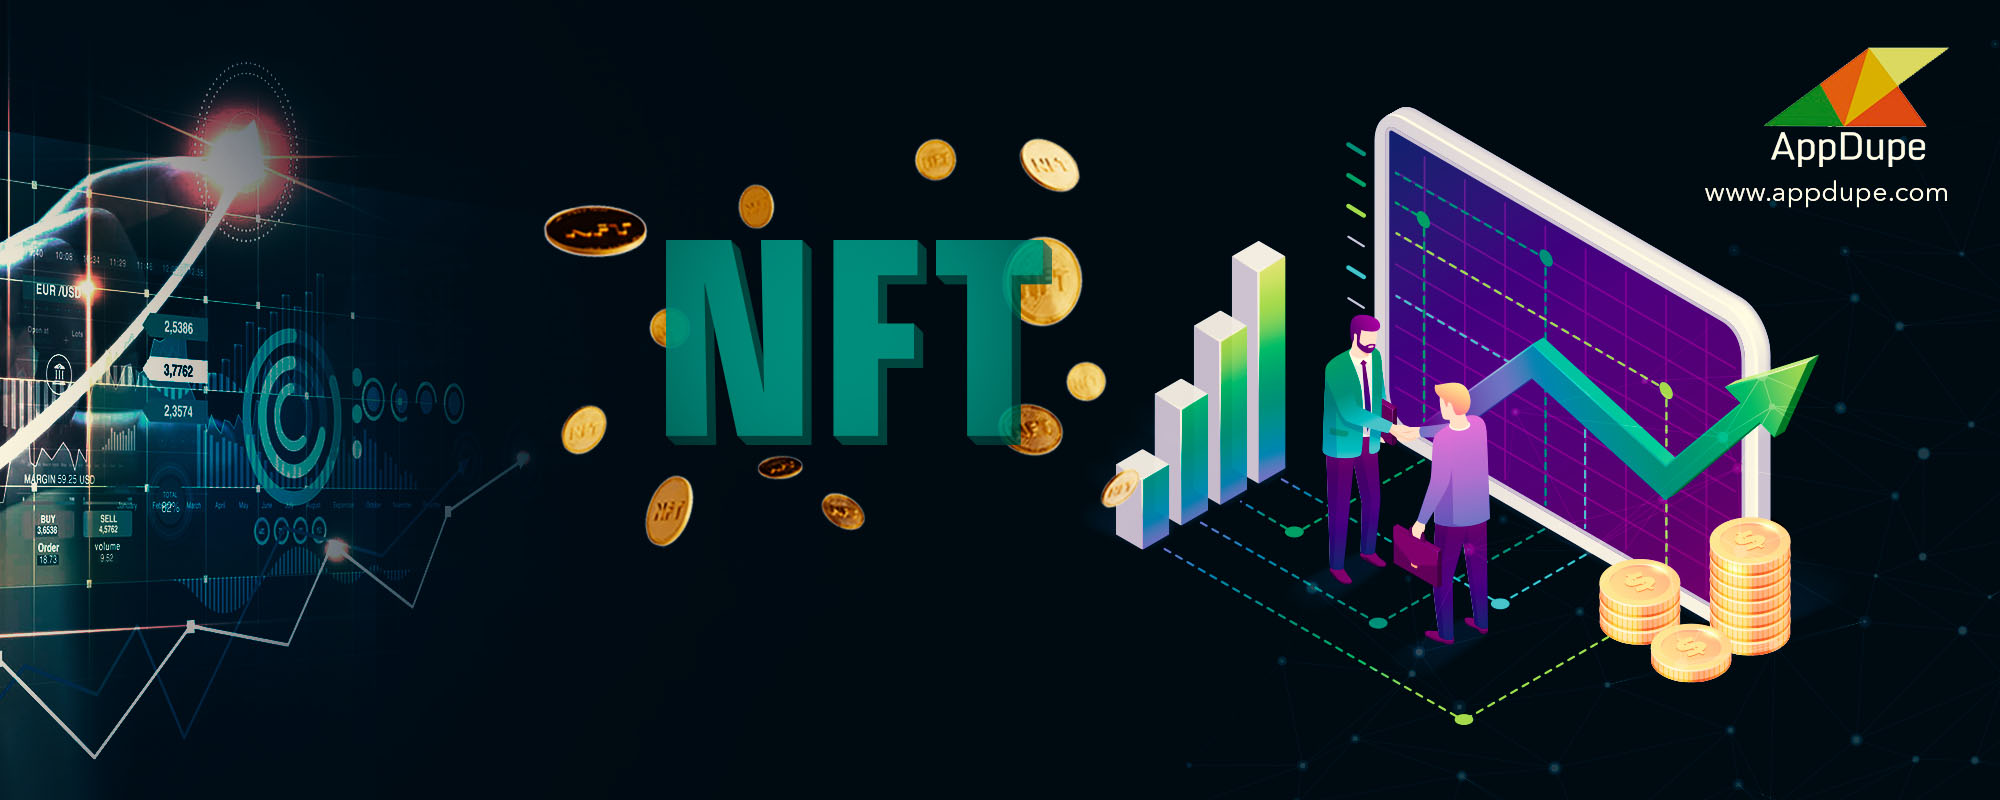 NFT Lending Platform Development